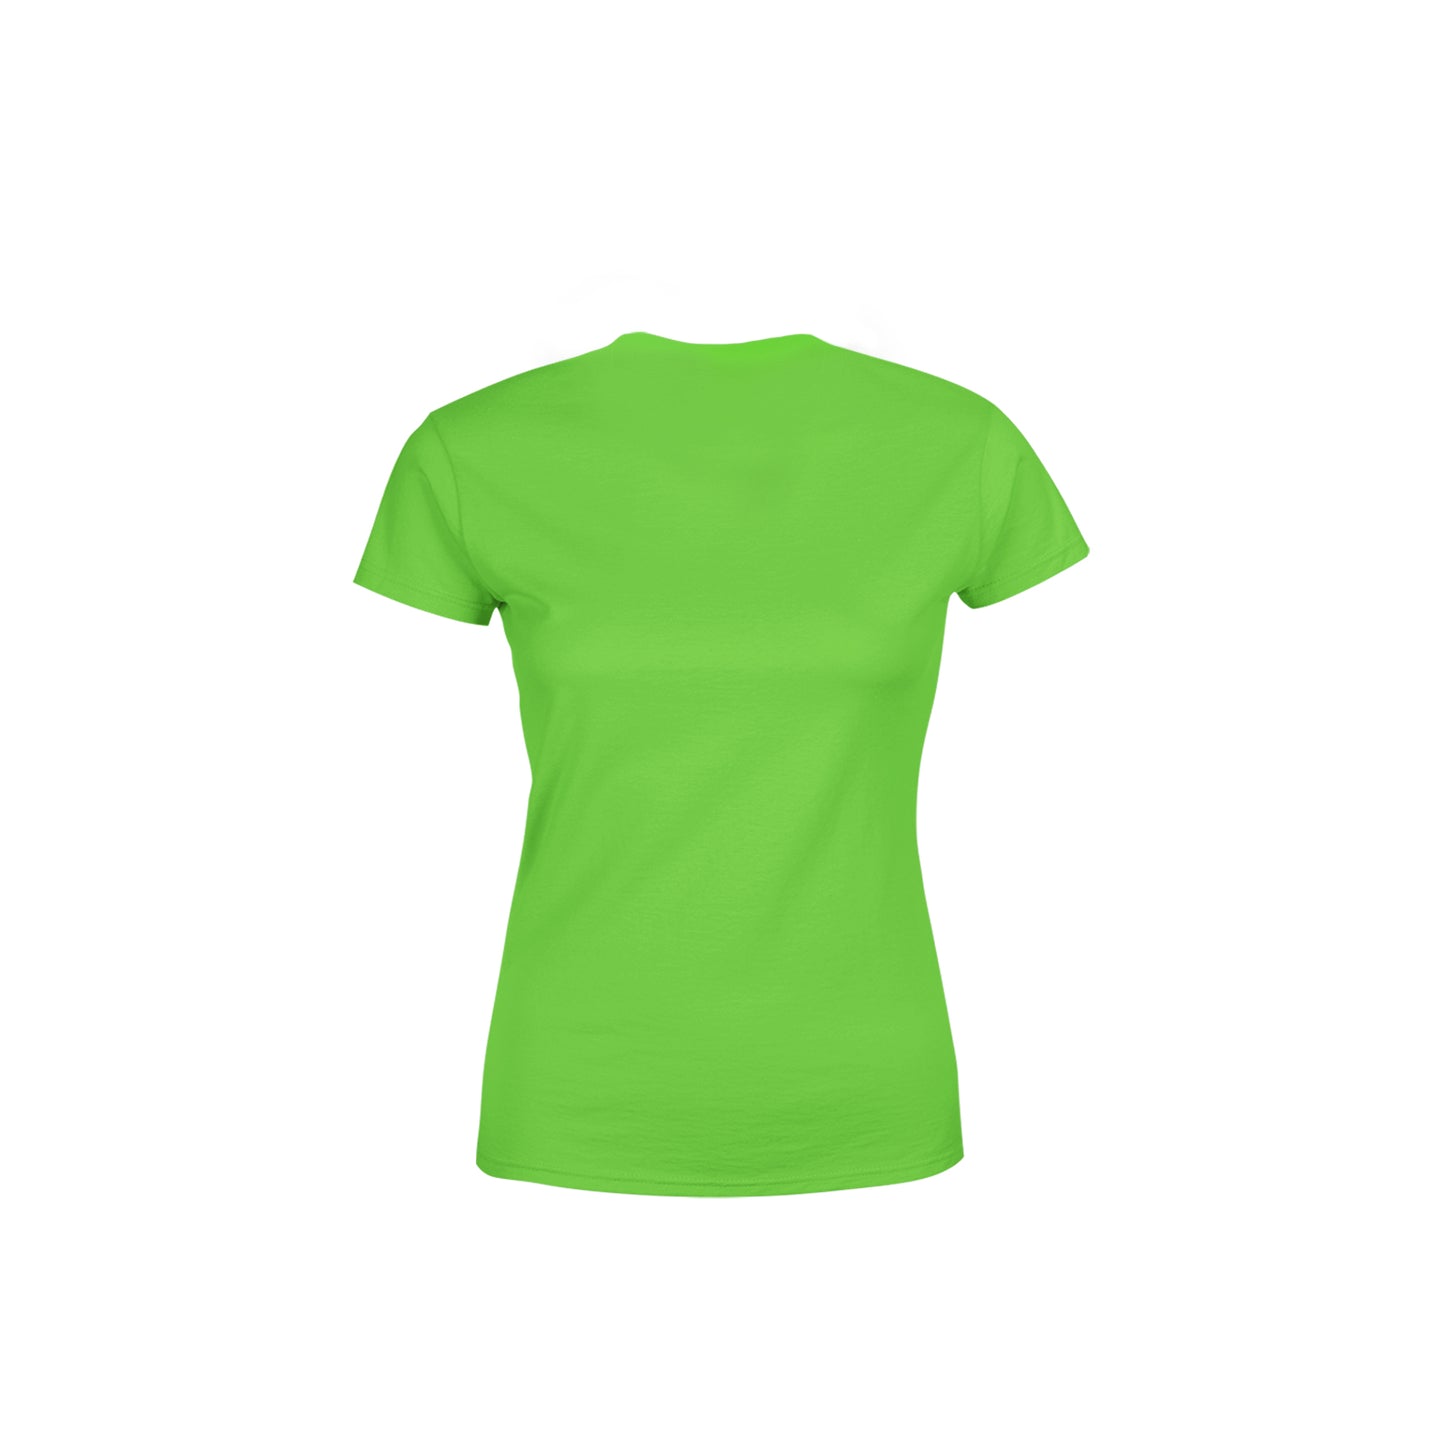 71 Number Women's T-Shirt (Liril Green)